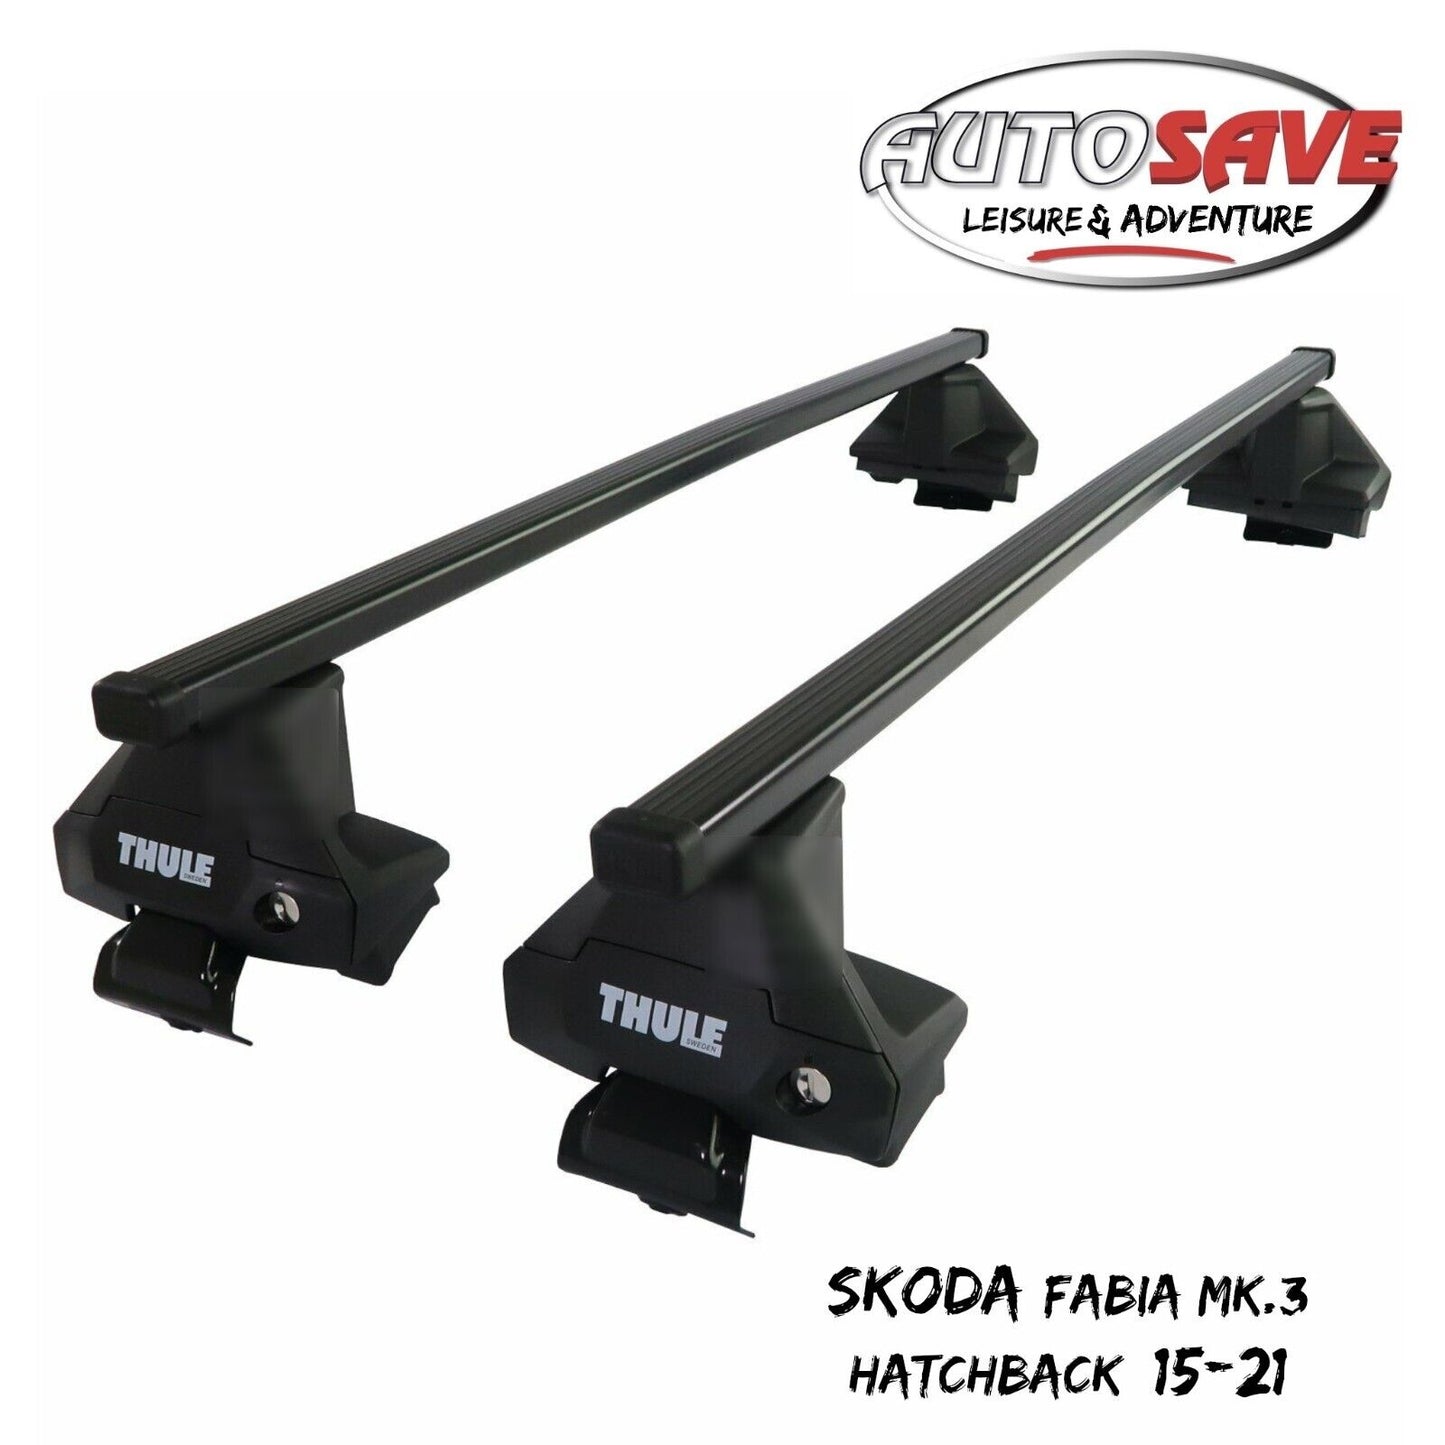 Thule Steel SquareBar Evo Roof Bars Set to fit Skoda Fabia Mk.3 Hatchback 15-21